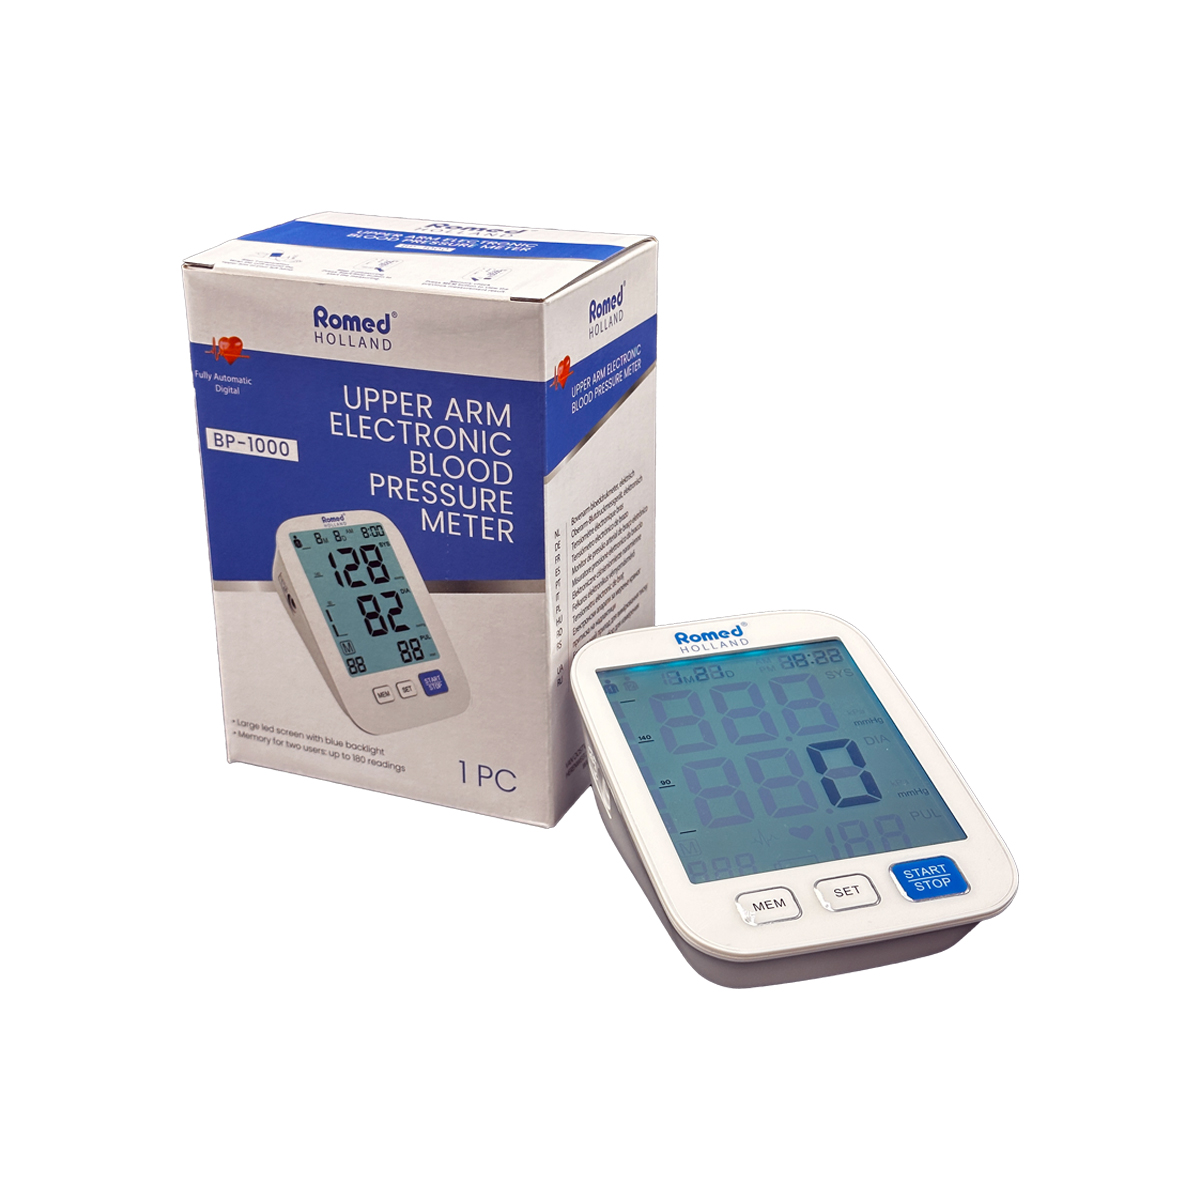 BP-1000 Medidores de tensión arterial Romed, totalmente automáticos, electrónicos, por unidad en una caja interior, 10 unidades en una caja de cartón.